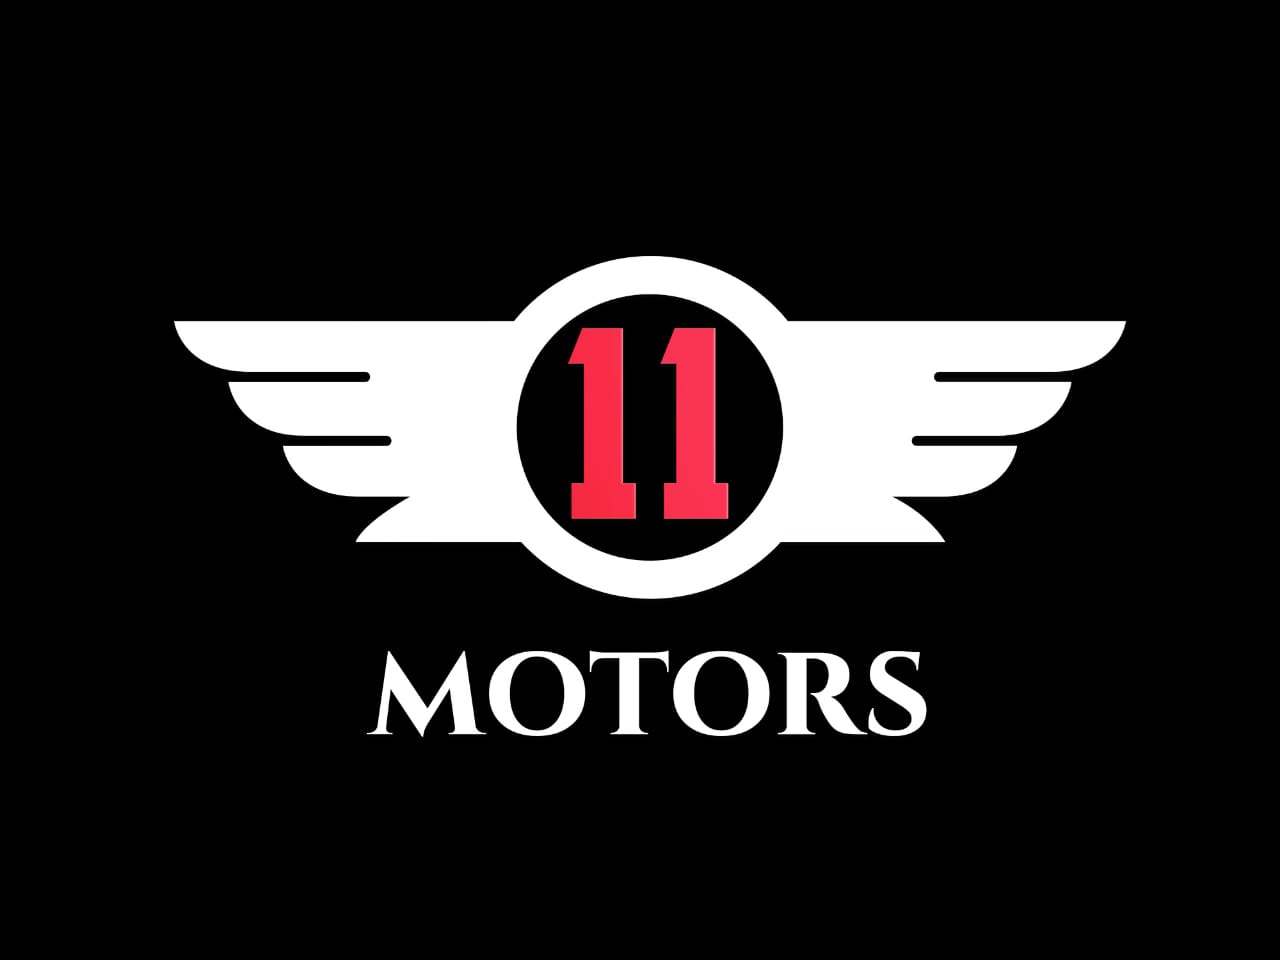 11 MOTORS